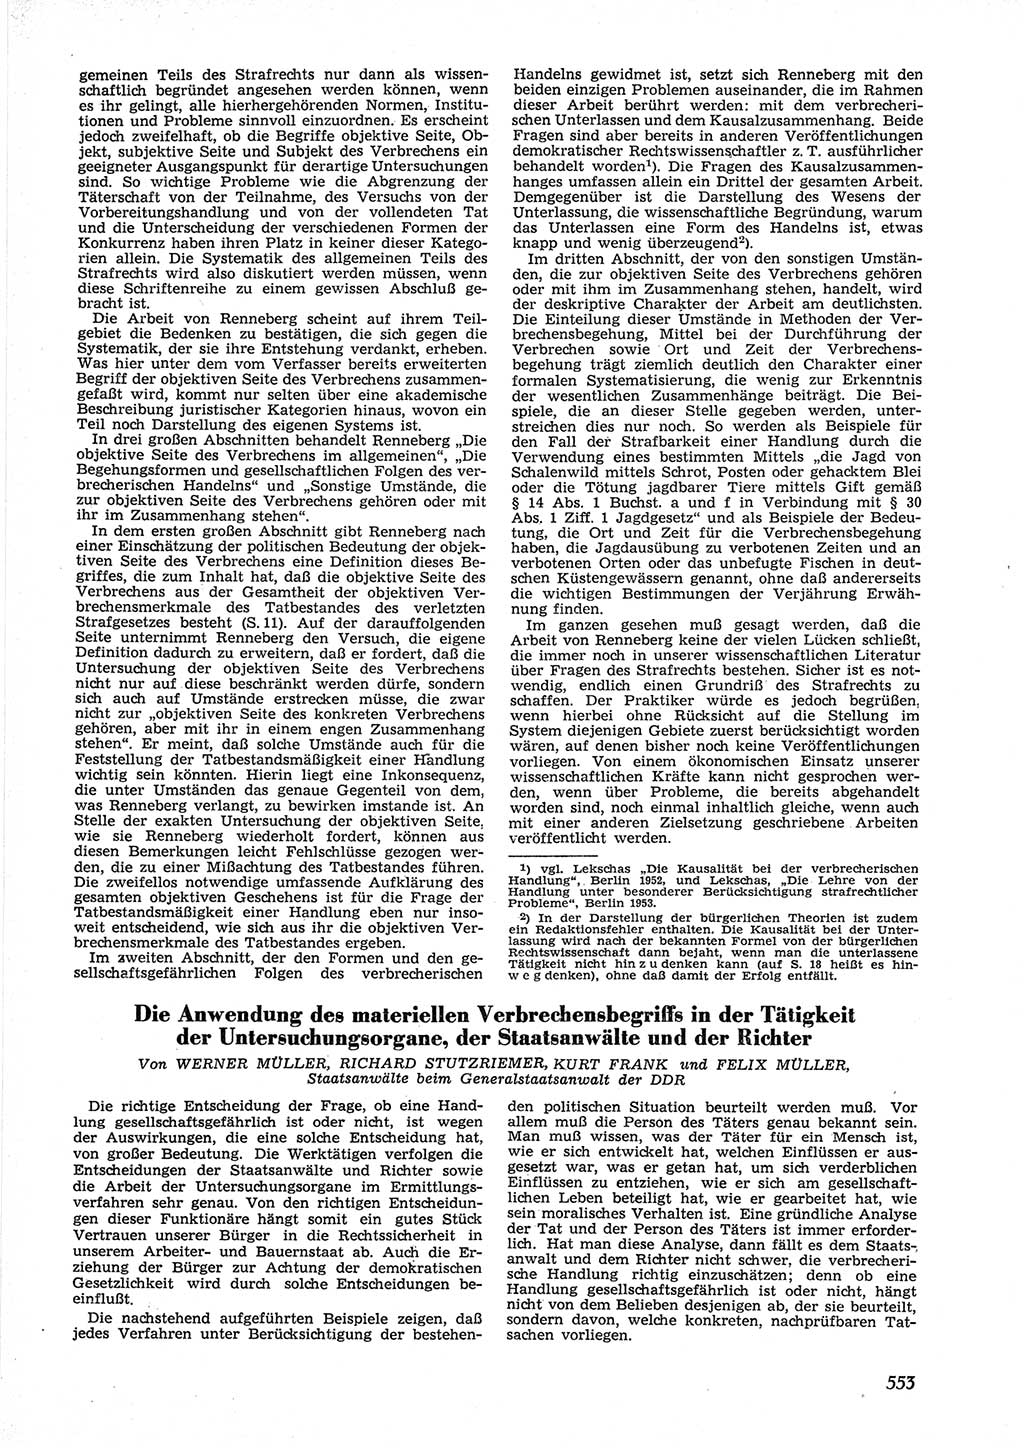 Neue Justiz (NJ), Zeitschrift für Recht und Rechtswissenschaft [Deutsche Demokratische Republik (DDR)], 9. Jahrgang 1955, Seite 553 (NJ DDR 1955, S. 553)